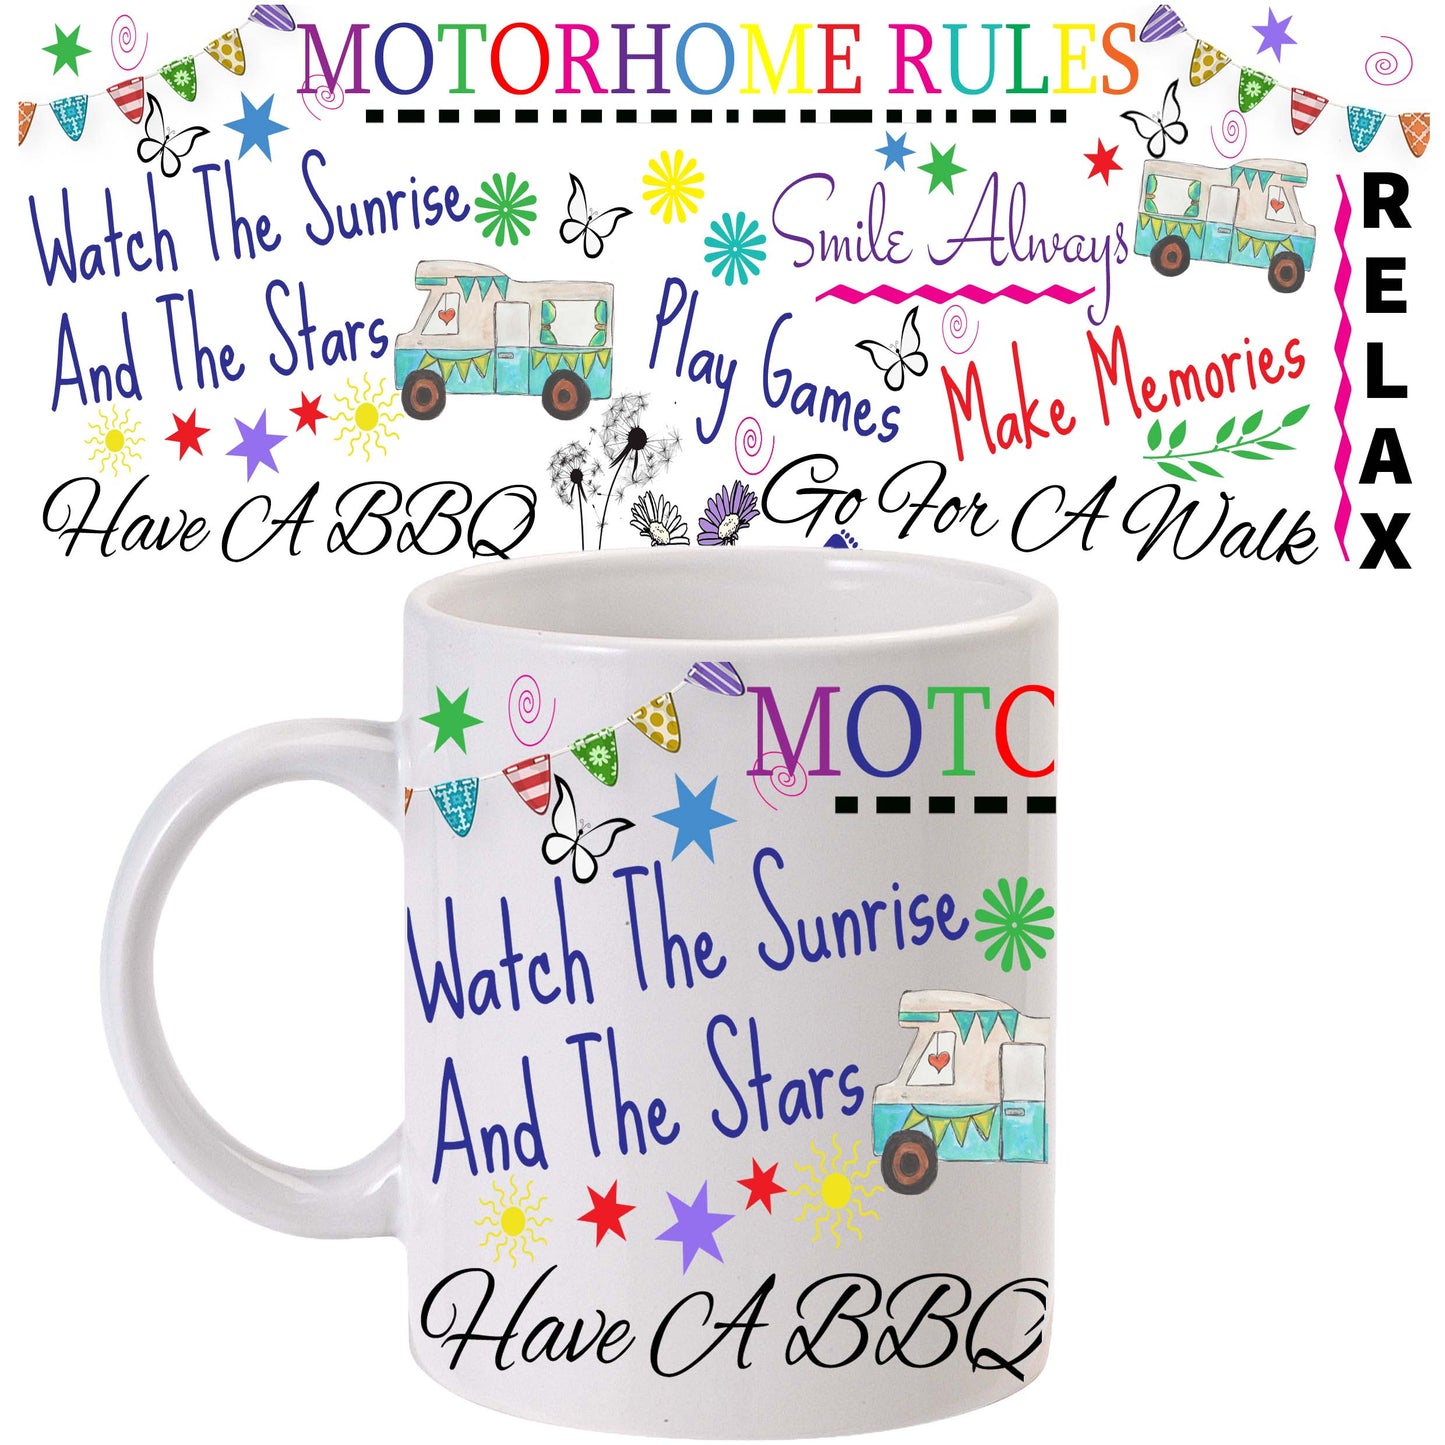 Motorhome rules mug